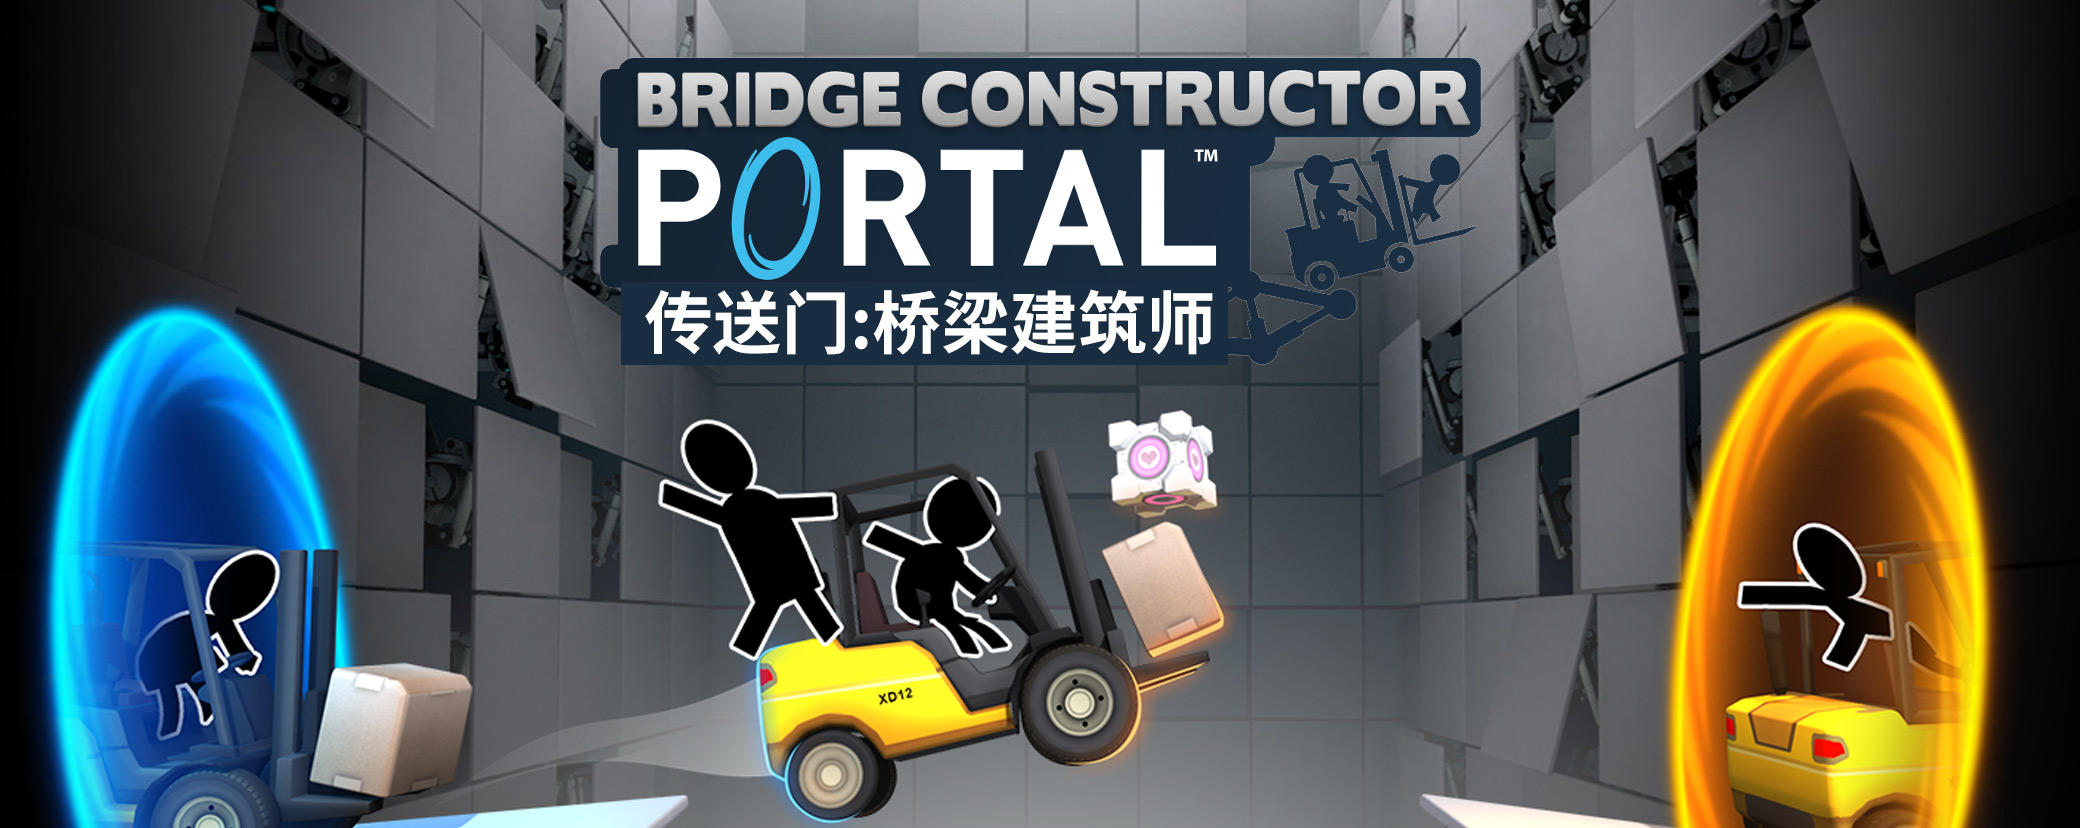 Bridge Constructor Portal游戏截图